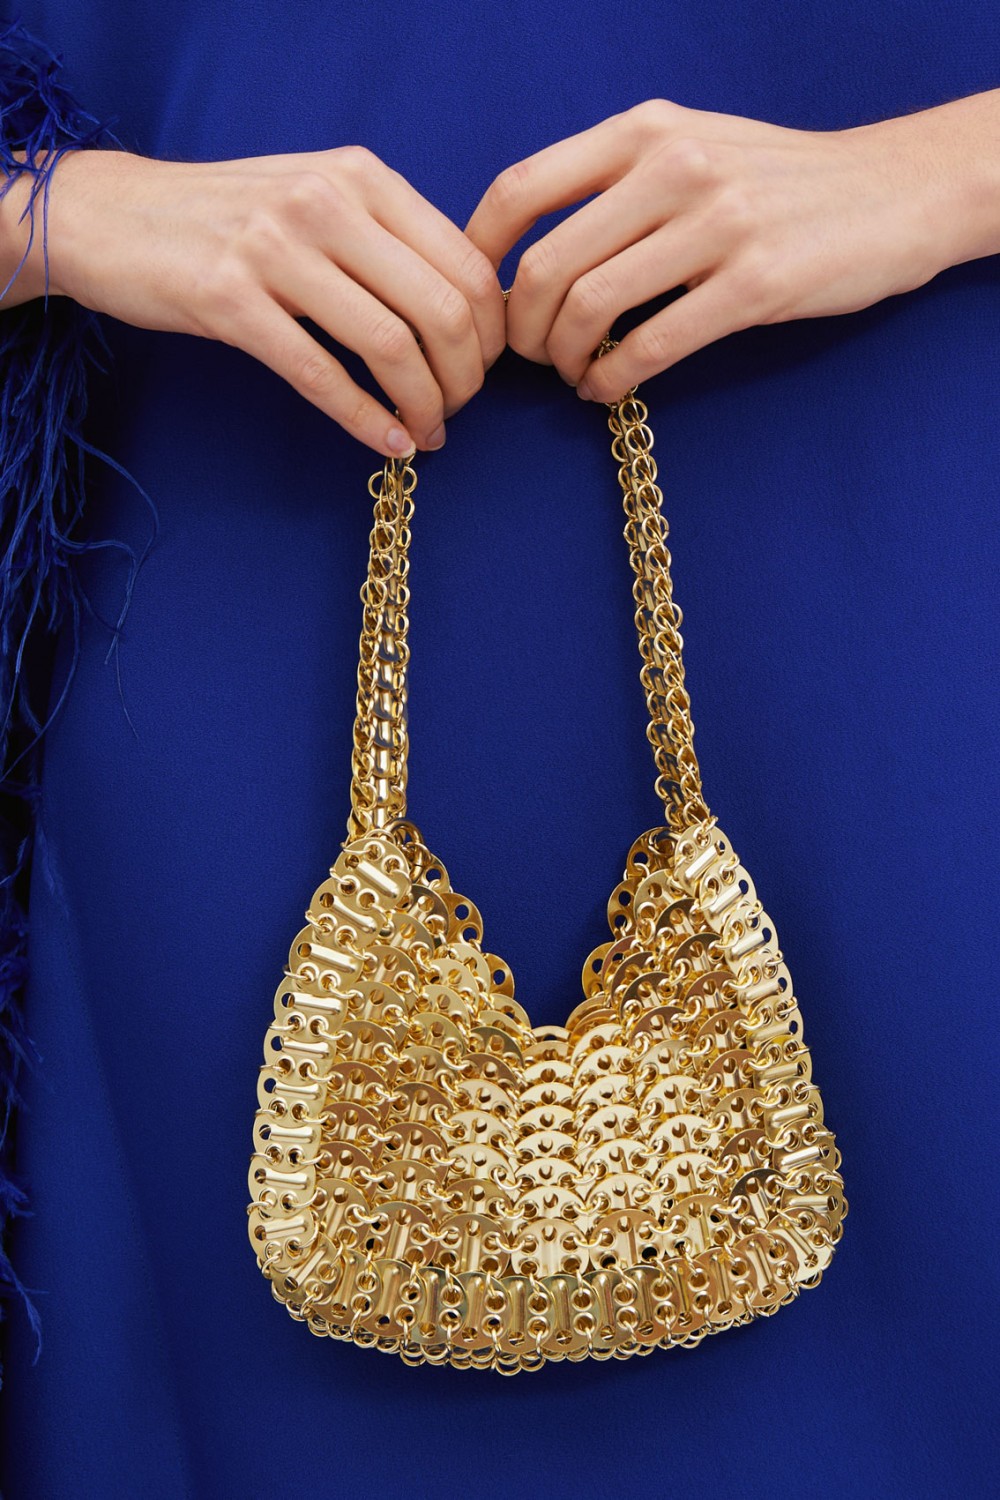 Golden metal mesh handbag